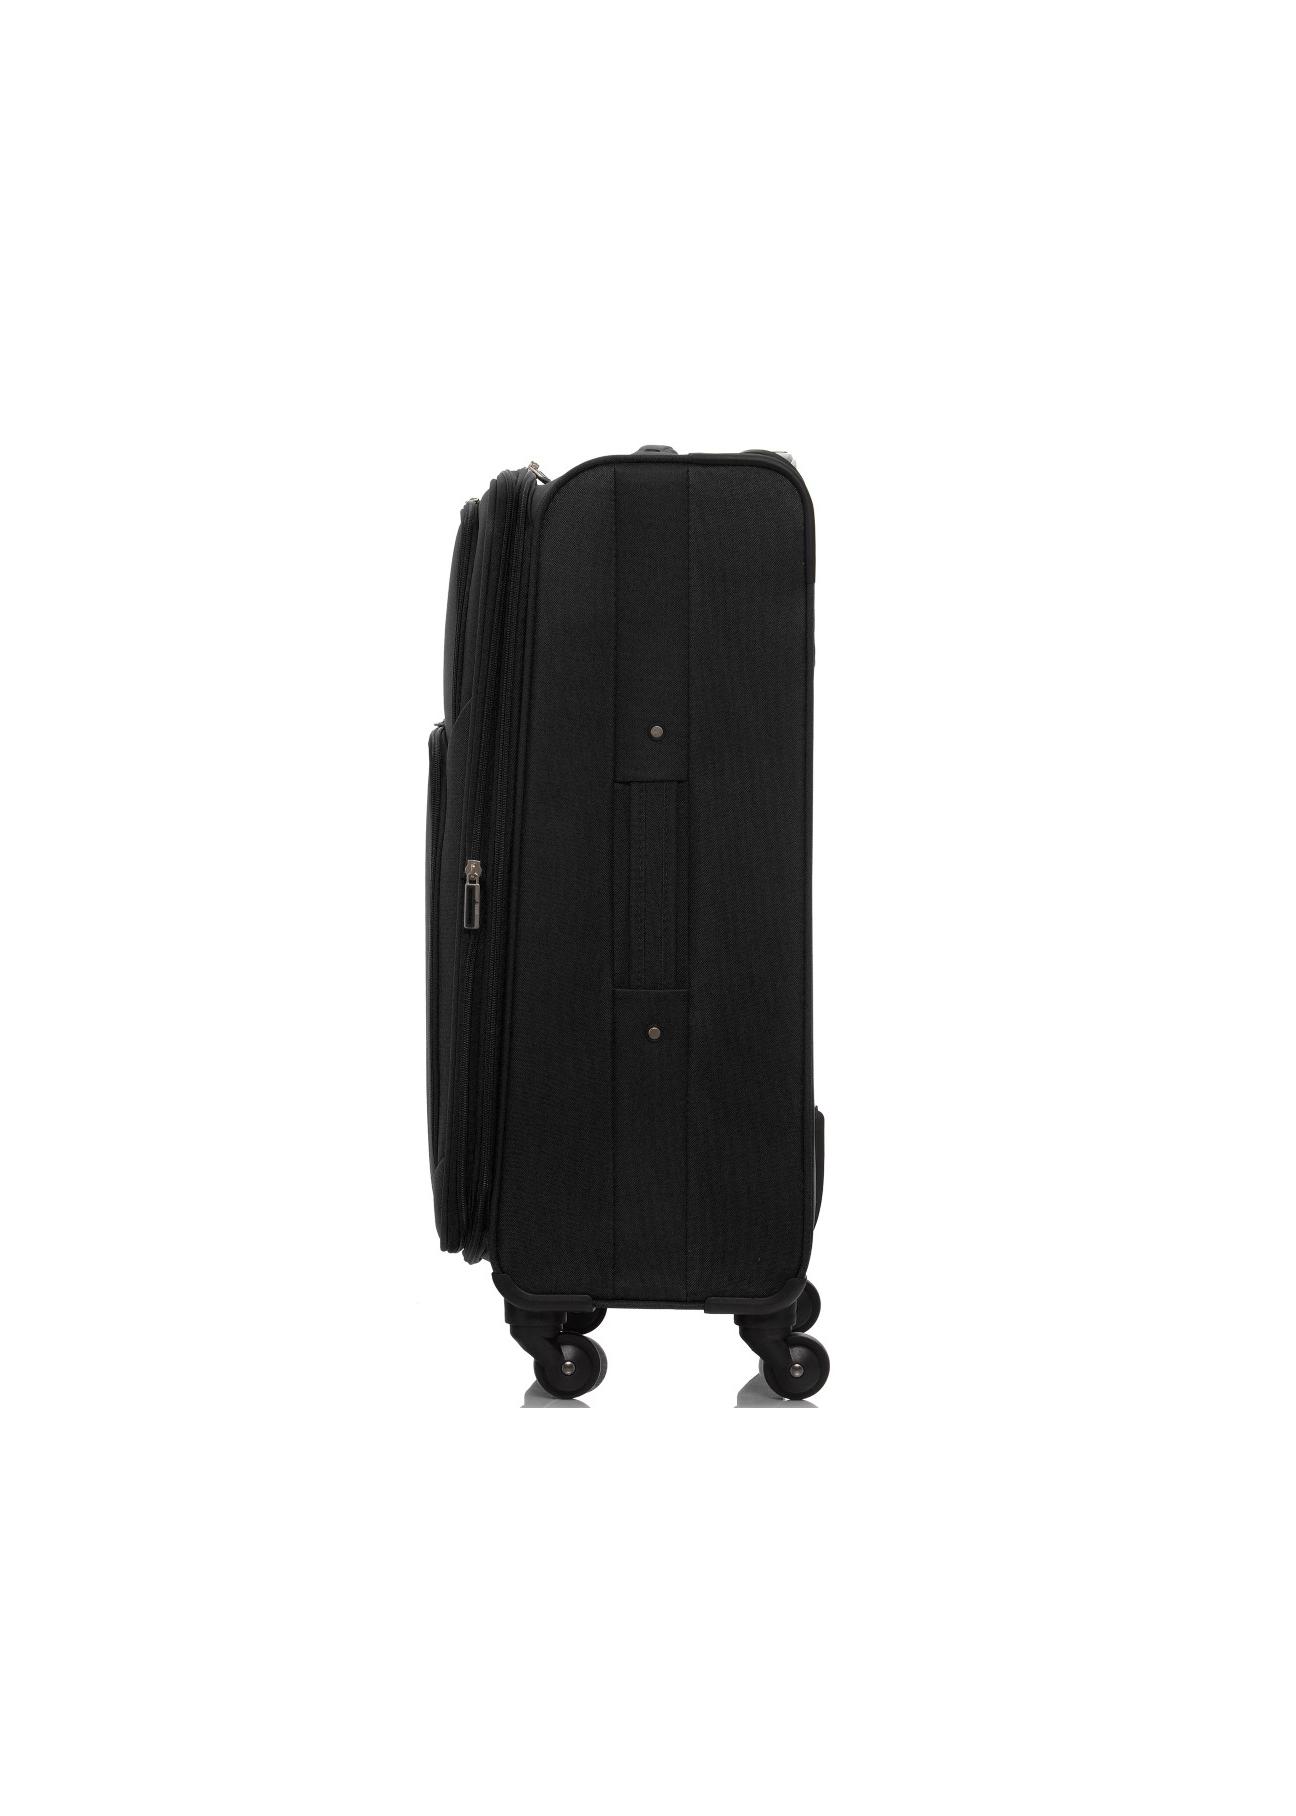 Średnia walizka na kółkach WALNY-0017-99-24(W17)